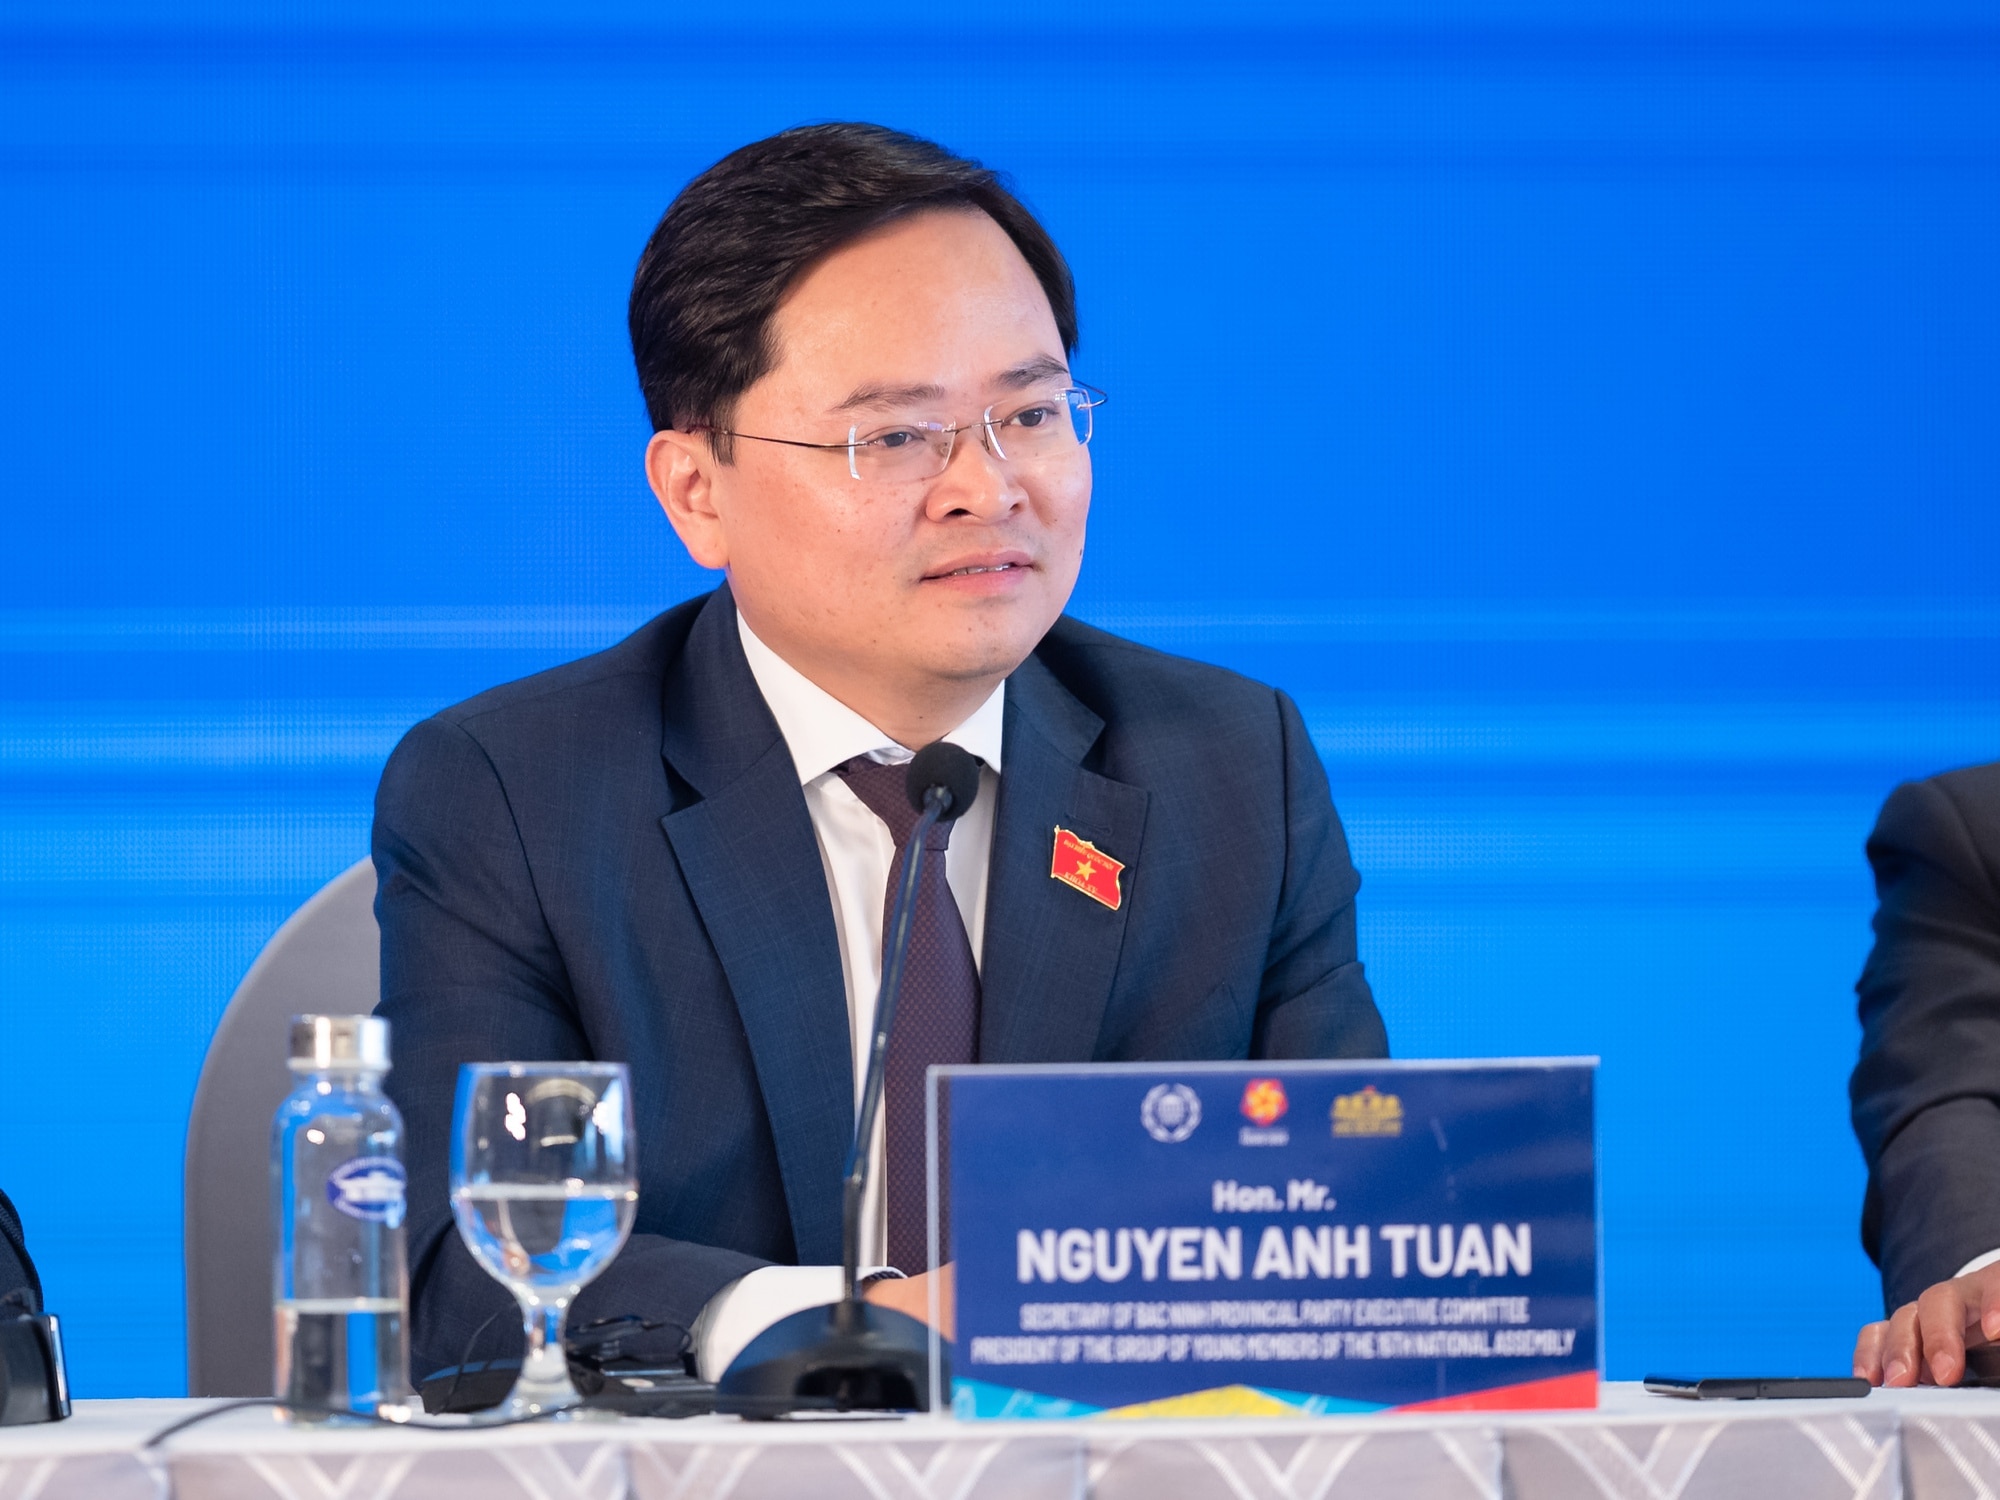 Chủ tịch Nhóm ĐBQH trẻ Việt Nam khóa XV Nguyễn Anh Tuấn: Nhiều dấu ấn tại Hội nghị Nghị sĩ trẻ toàn cầu lần thứ 9 - Ảnh 2.